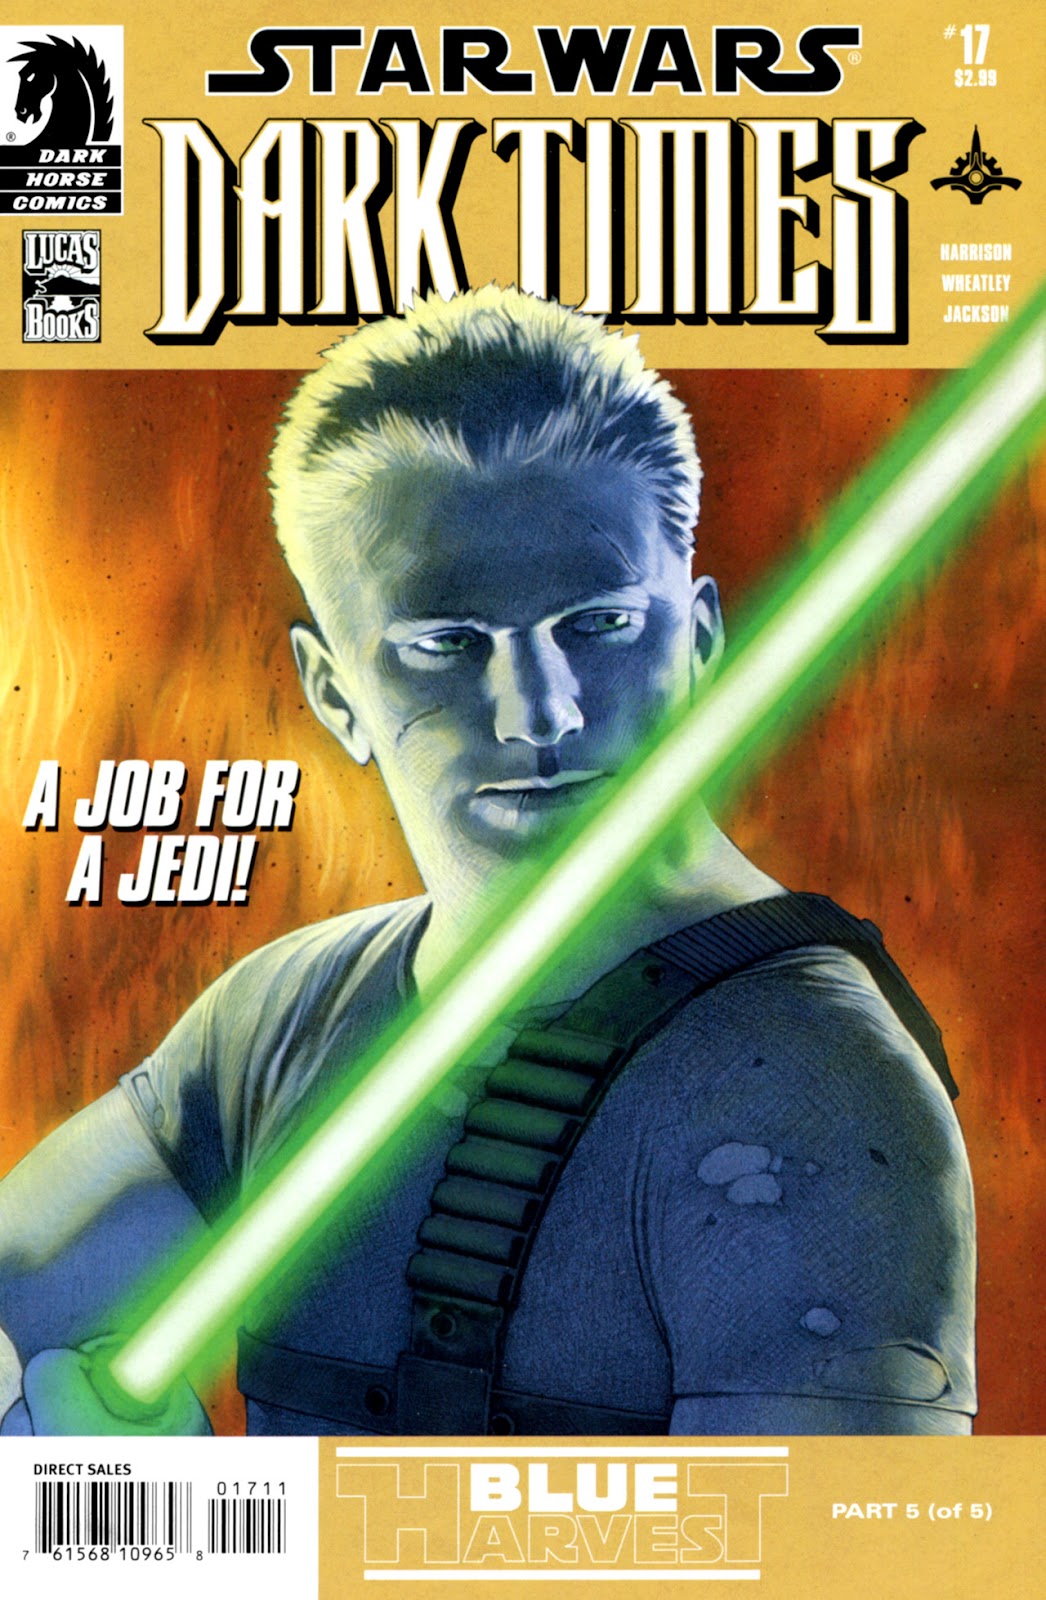 Star Wars: Dark Times issue 17 - Blue Harvest, Part 5 - Page 1